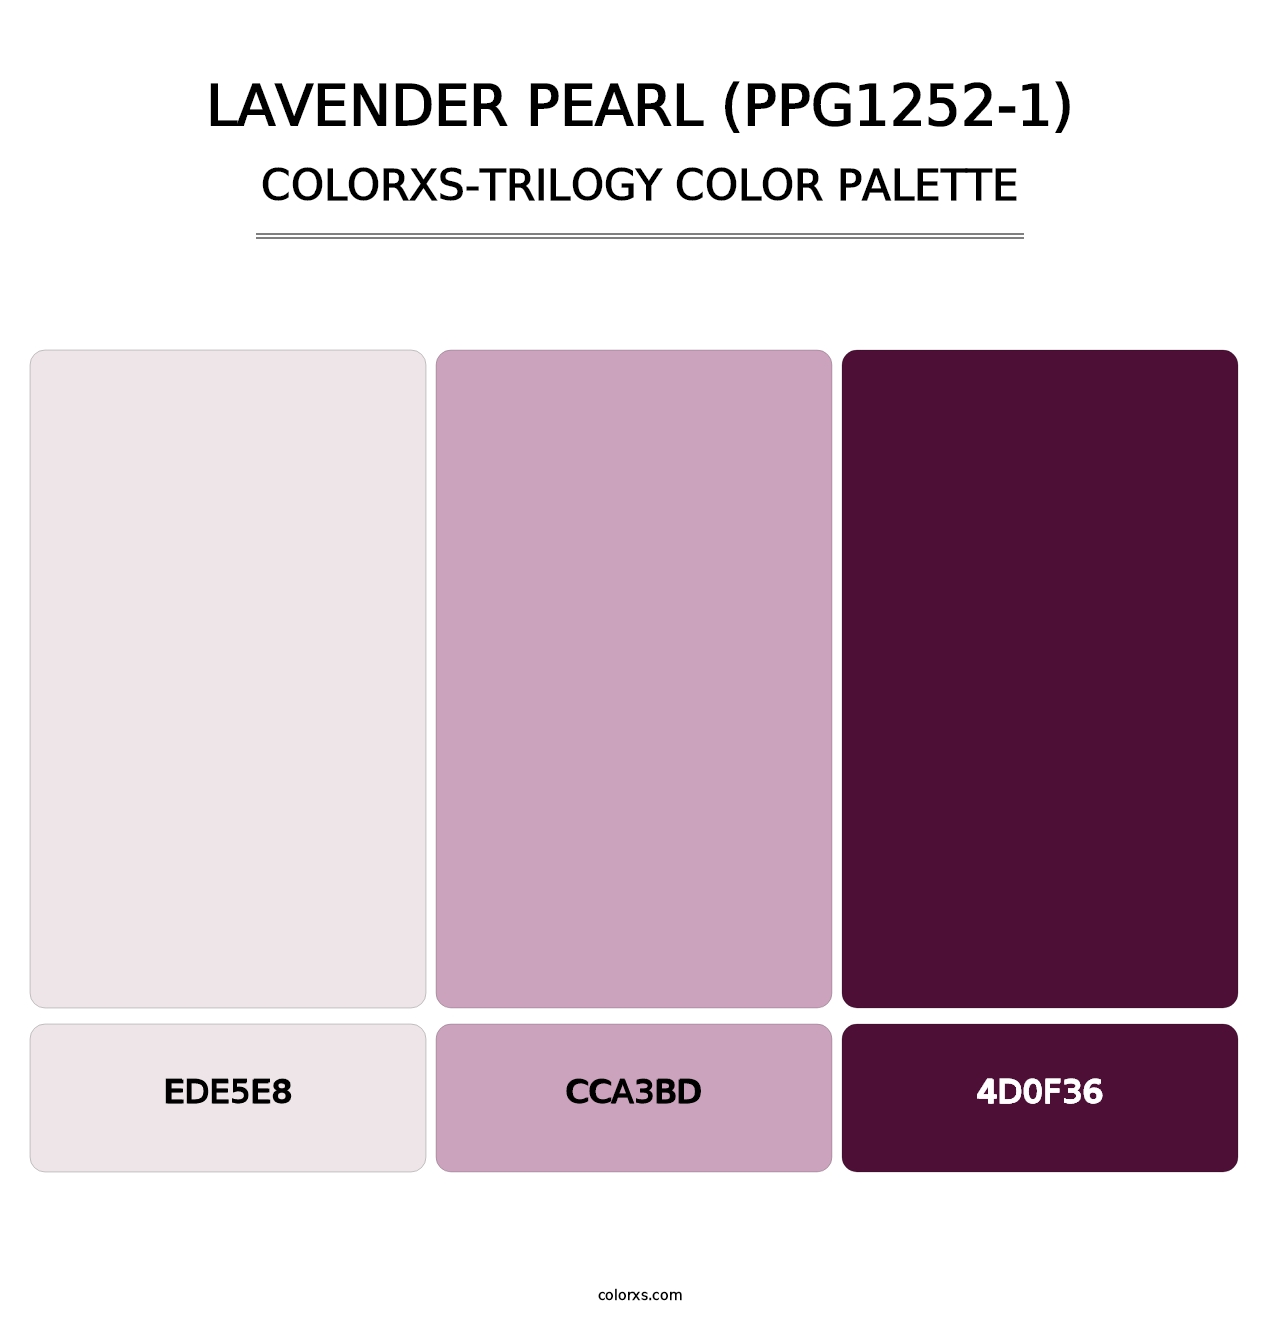 Lavender Pearl (PPG1252-1) - Colorxs Trilogy Palette